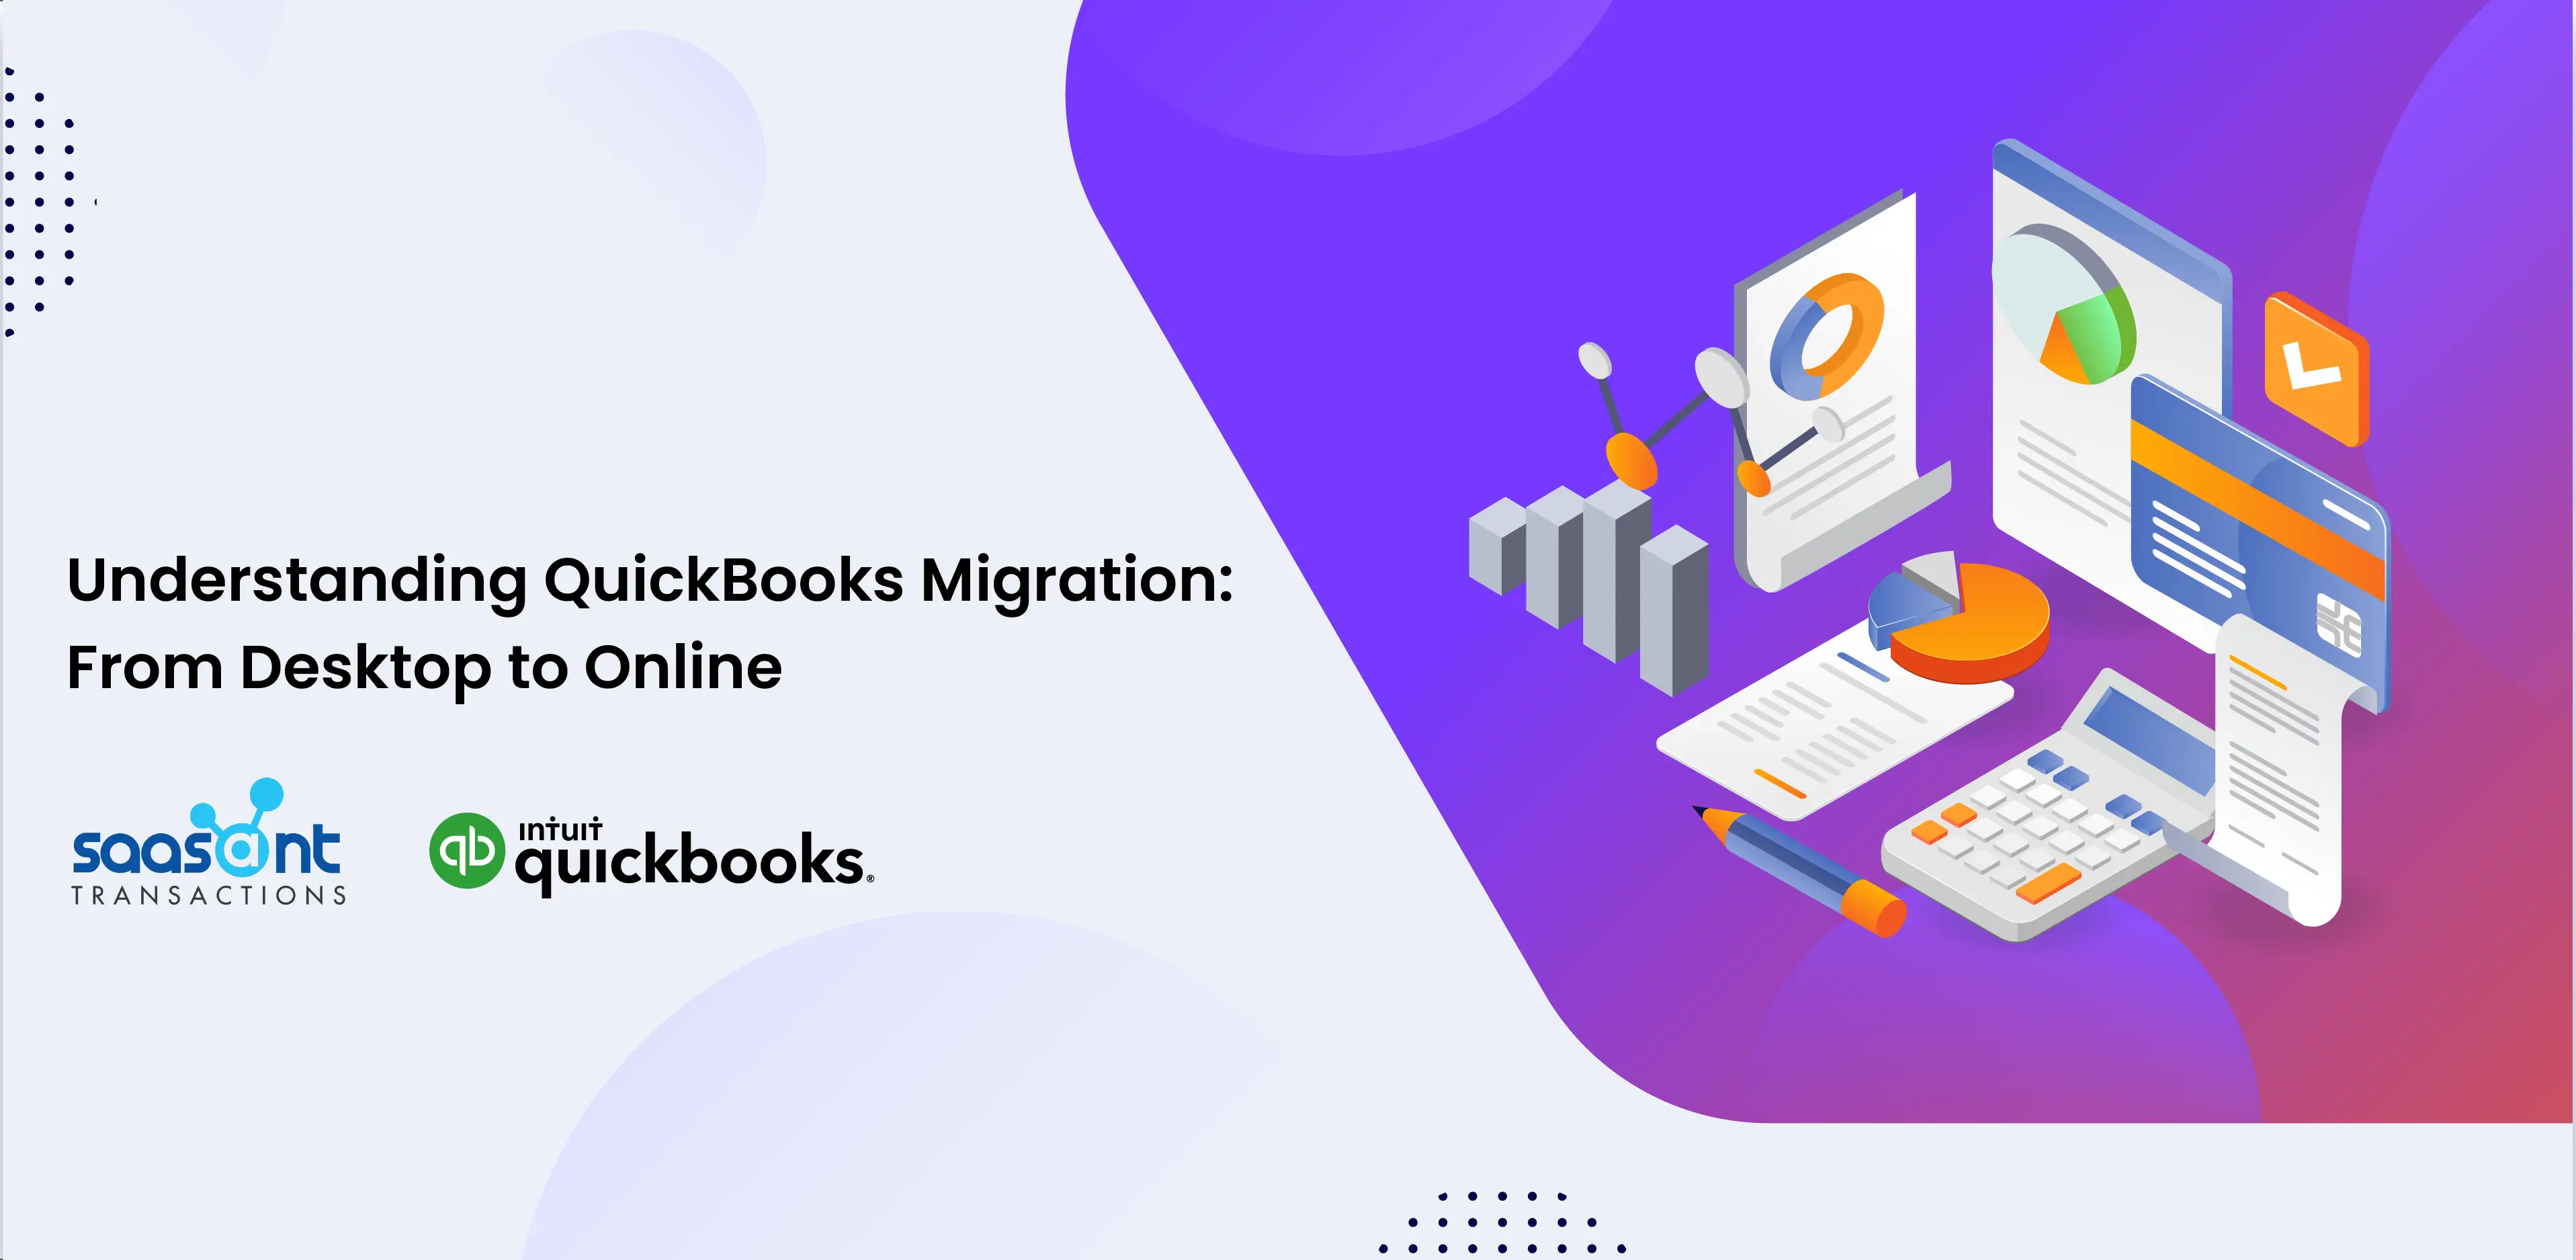 quickbooks migration